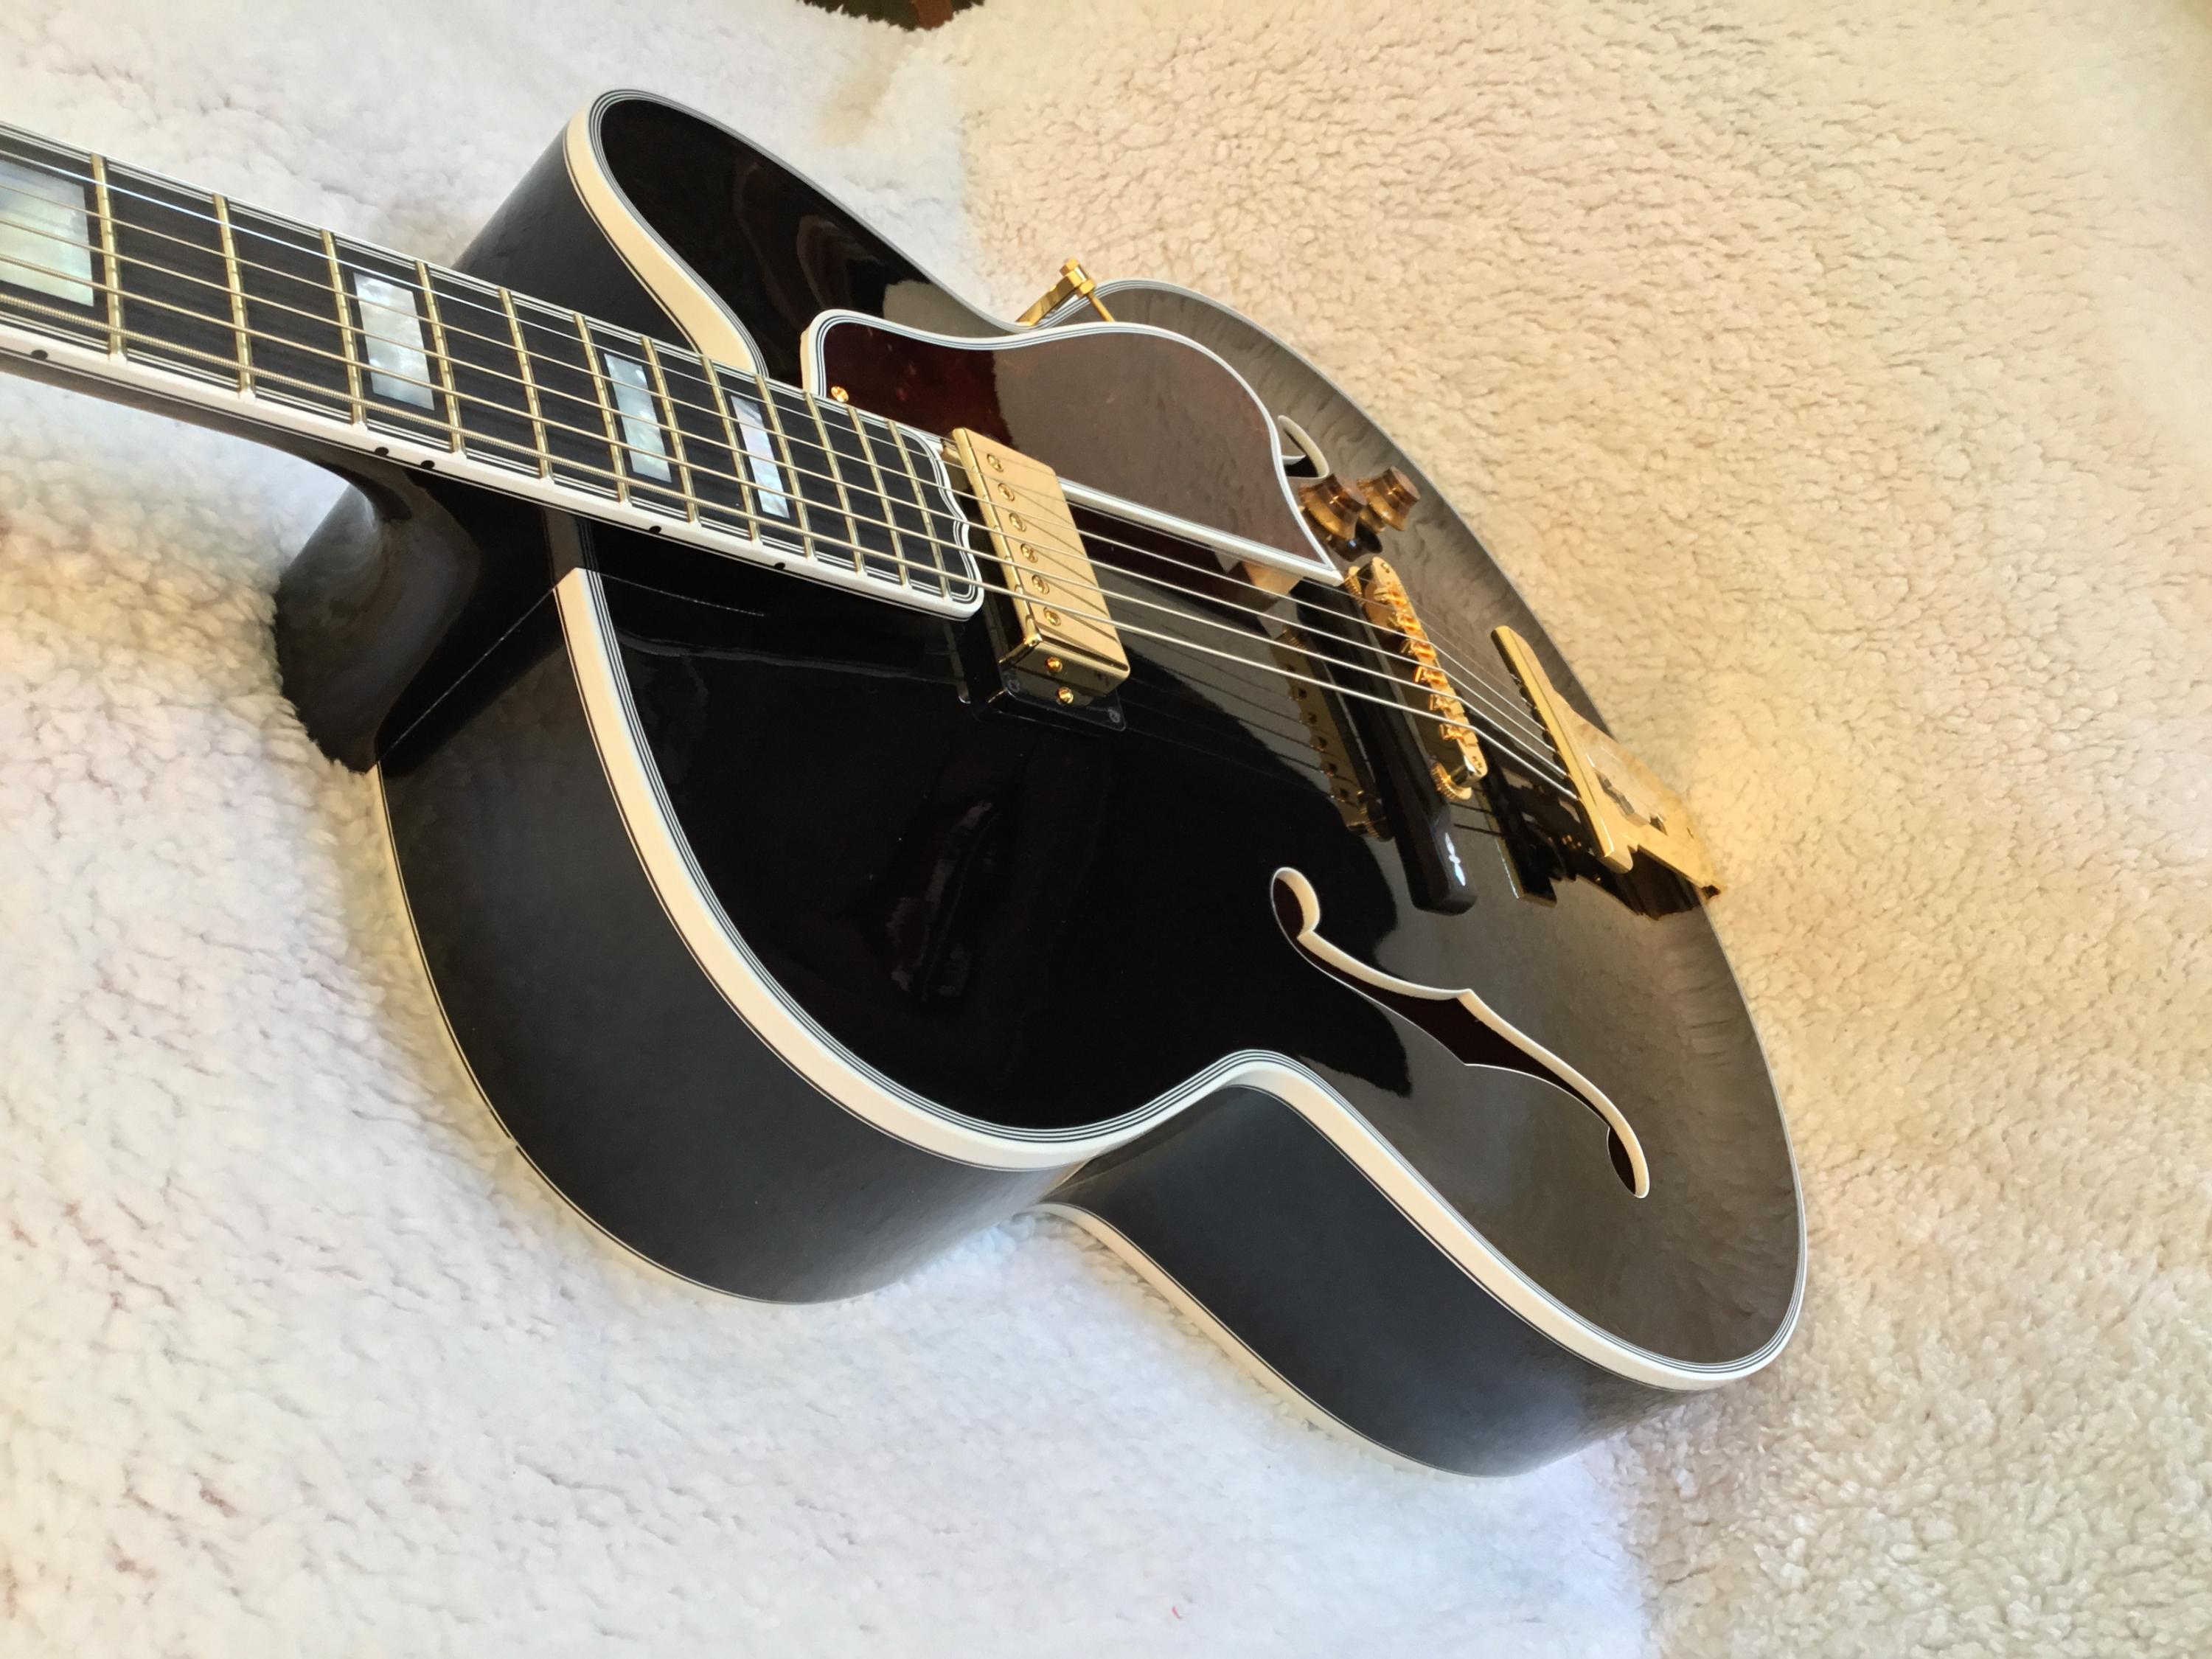 New Gibson Custom Shop L-4?-3363d092-d420-44fe-a43e-96006b0d5c42-jpg